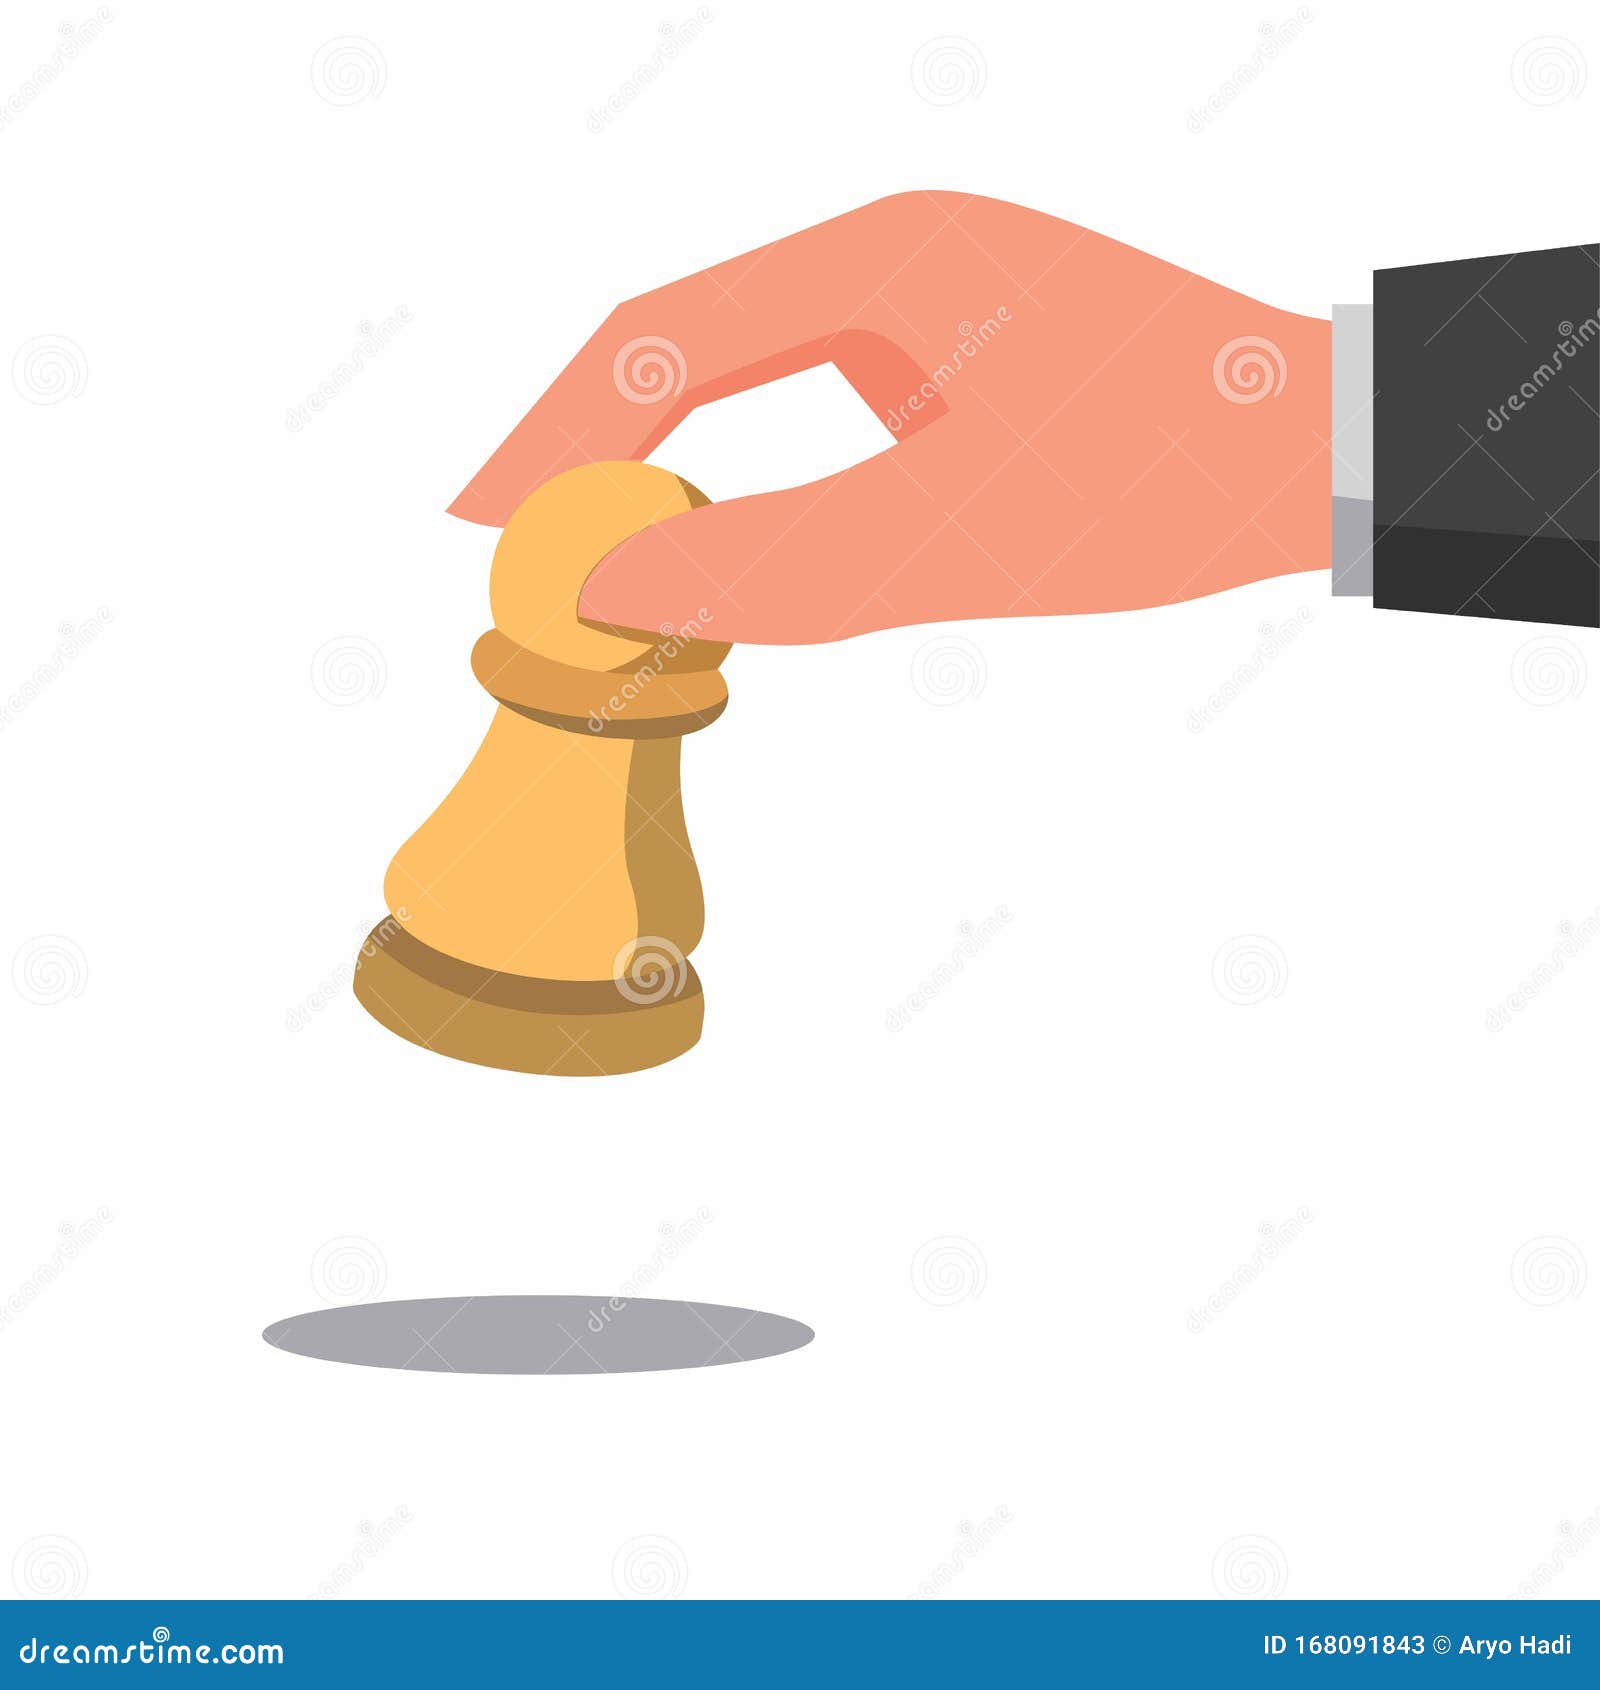 mão fazendo um movimento com peças de xadrez de madeira no xadrez 17268501  Foto de stock no Vecteezy